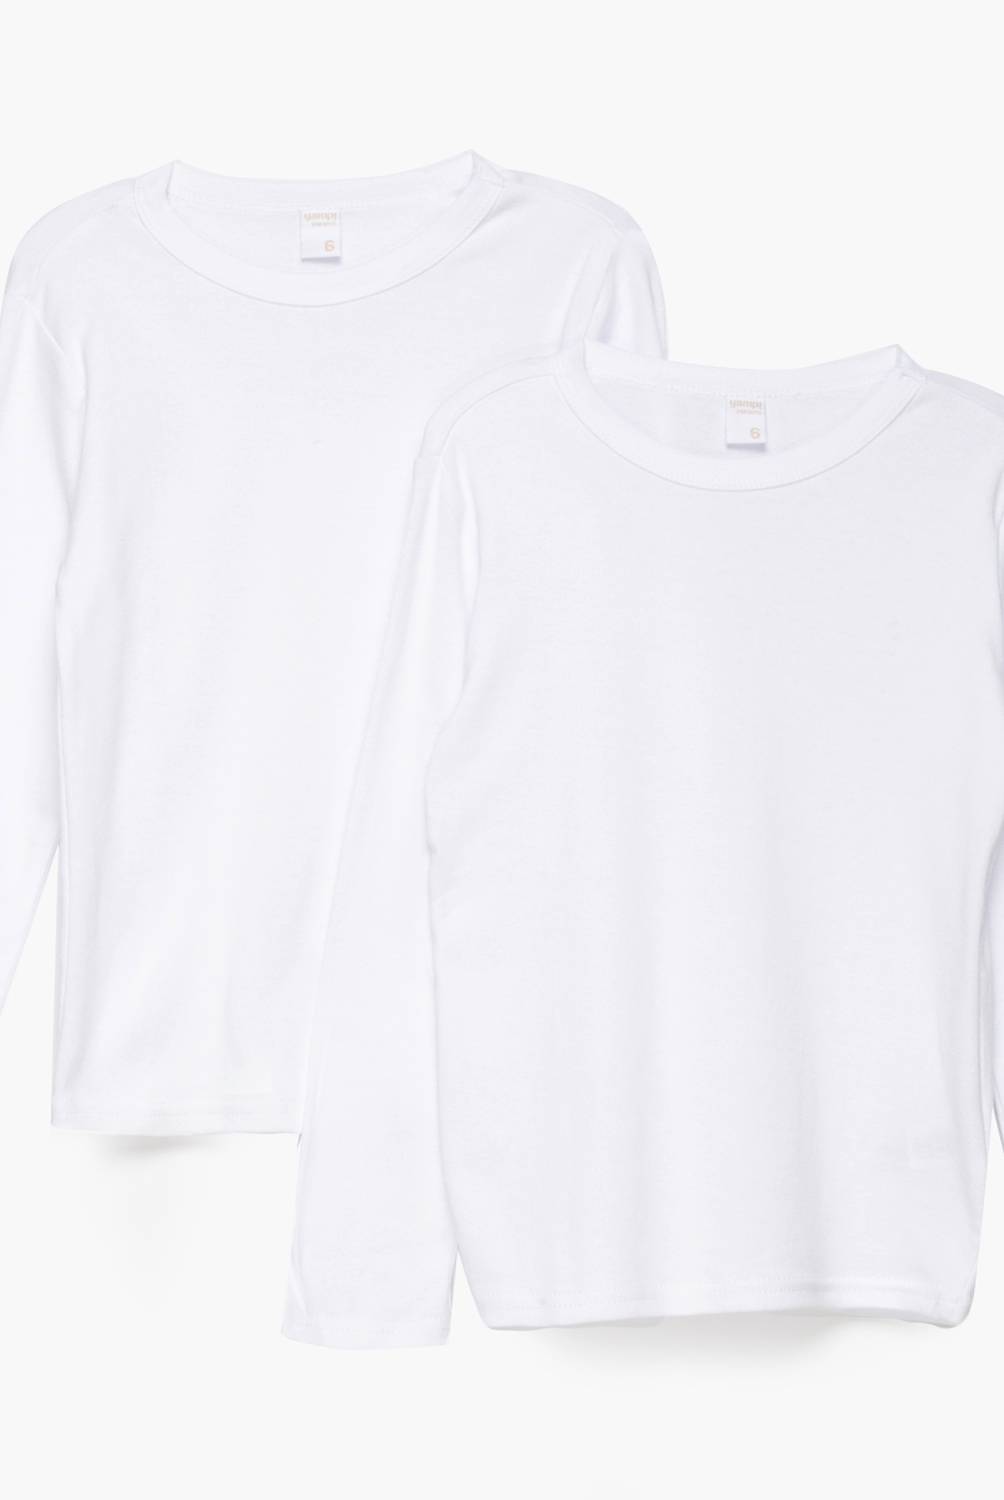 YAMP - Camiseta Pack De 2 Unidades Algodón Niña